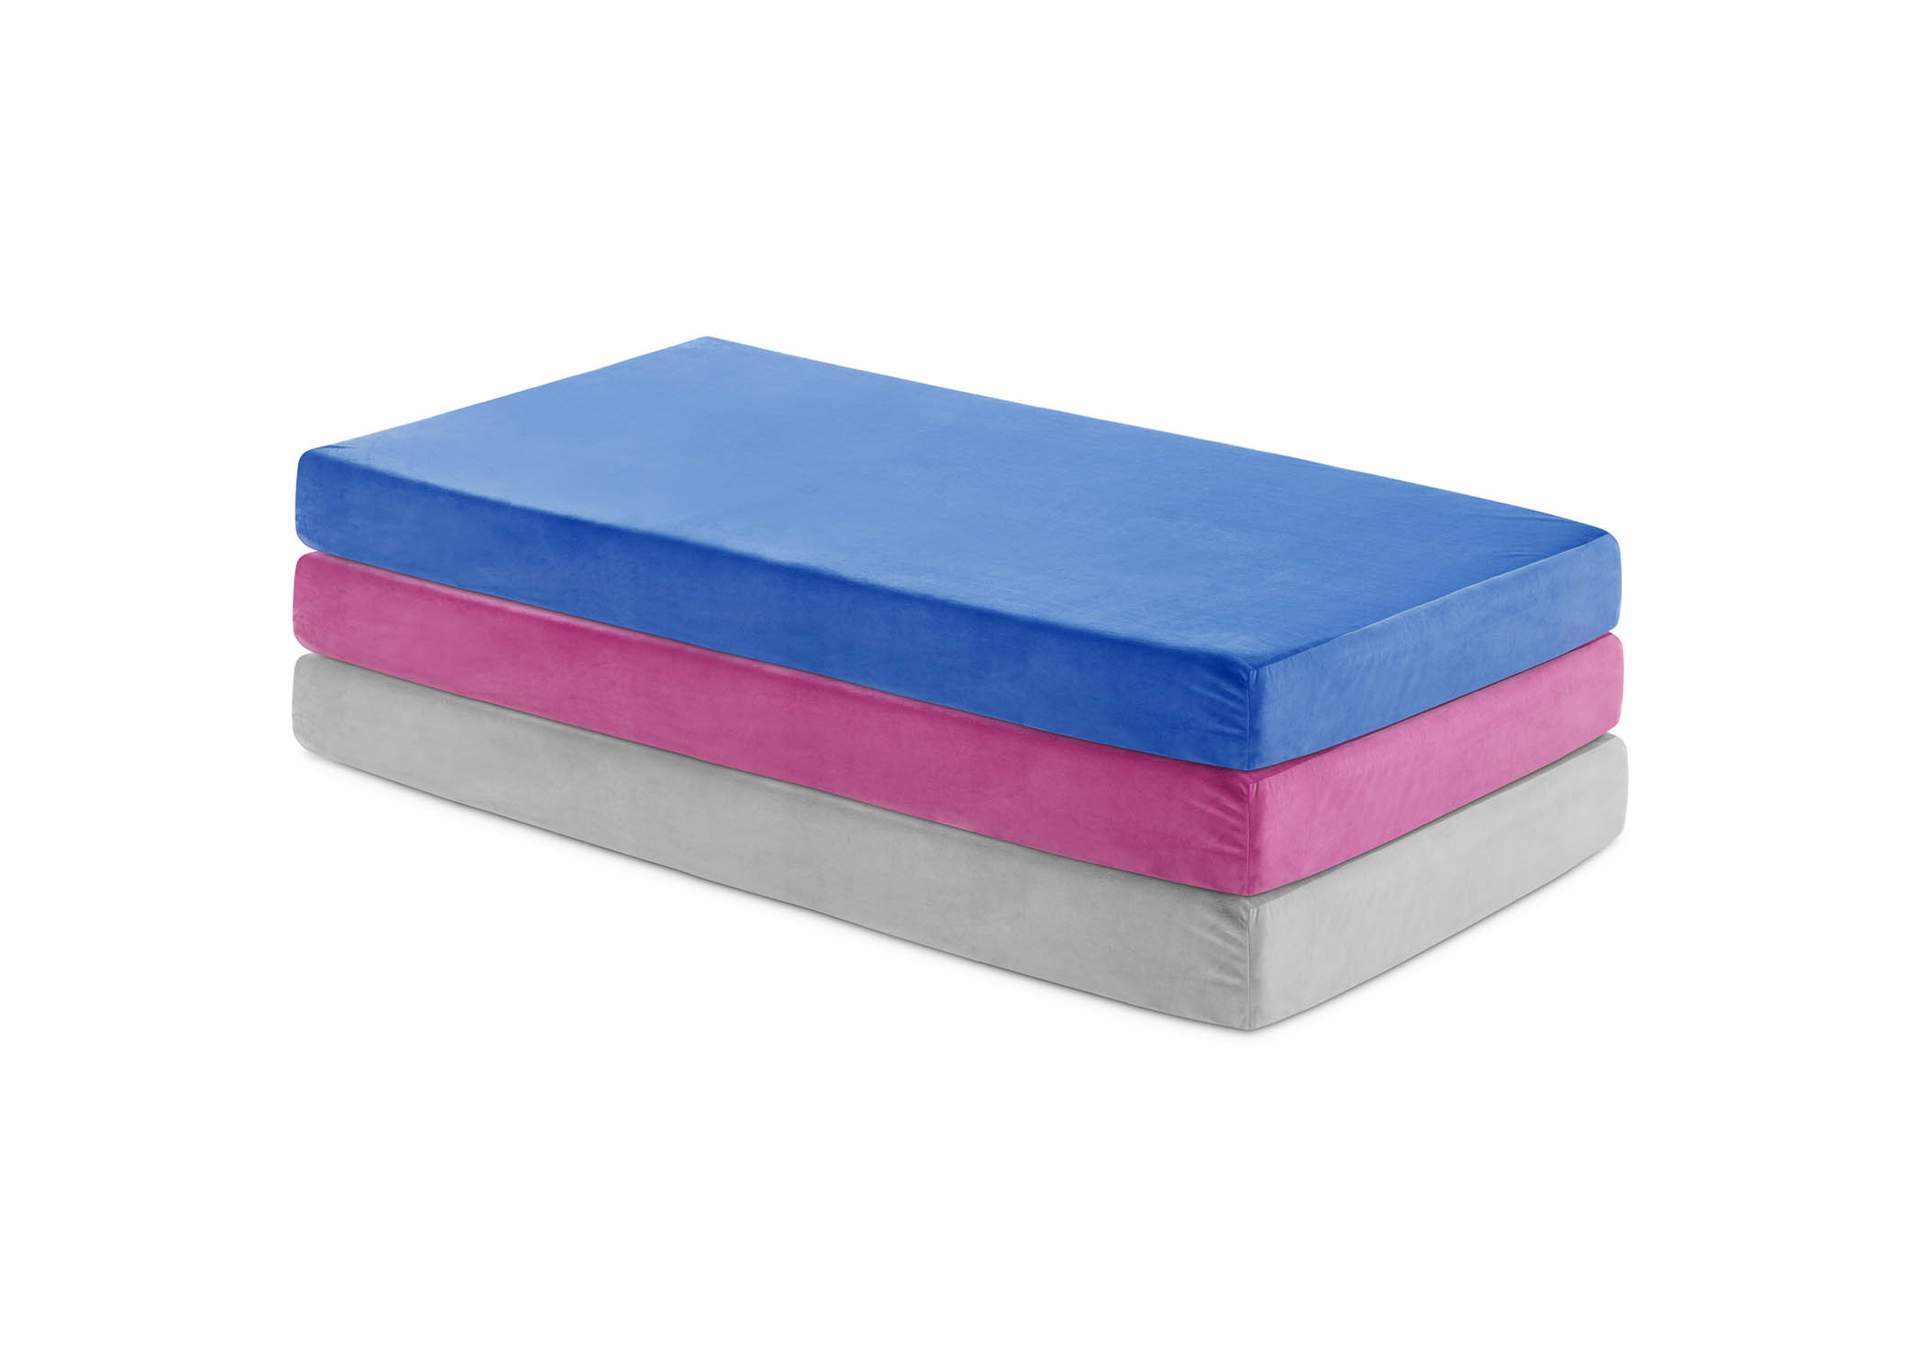 Weekender Blue Brighton Bed Gel Memory Foam Twin Mattress,Malouf